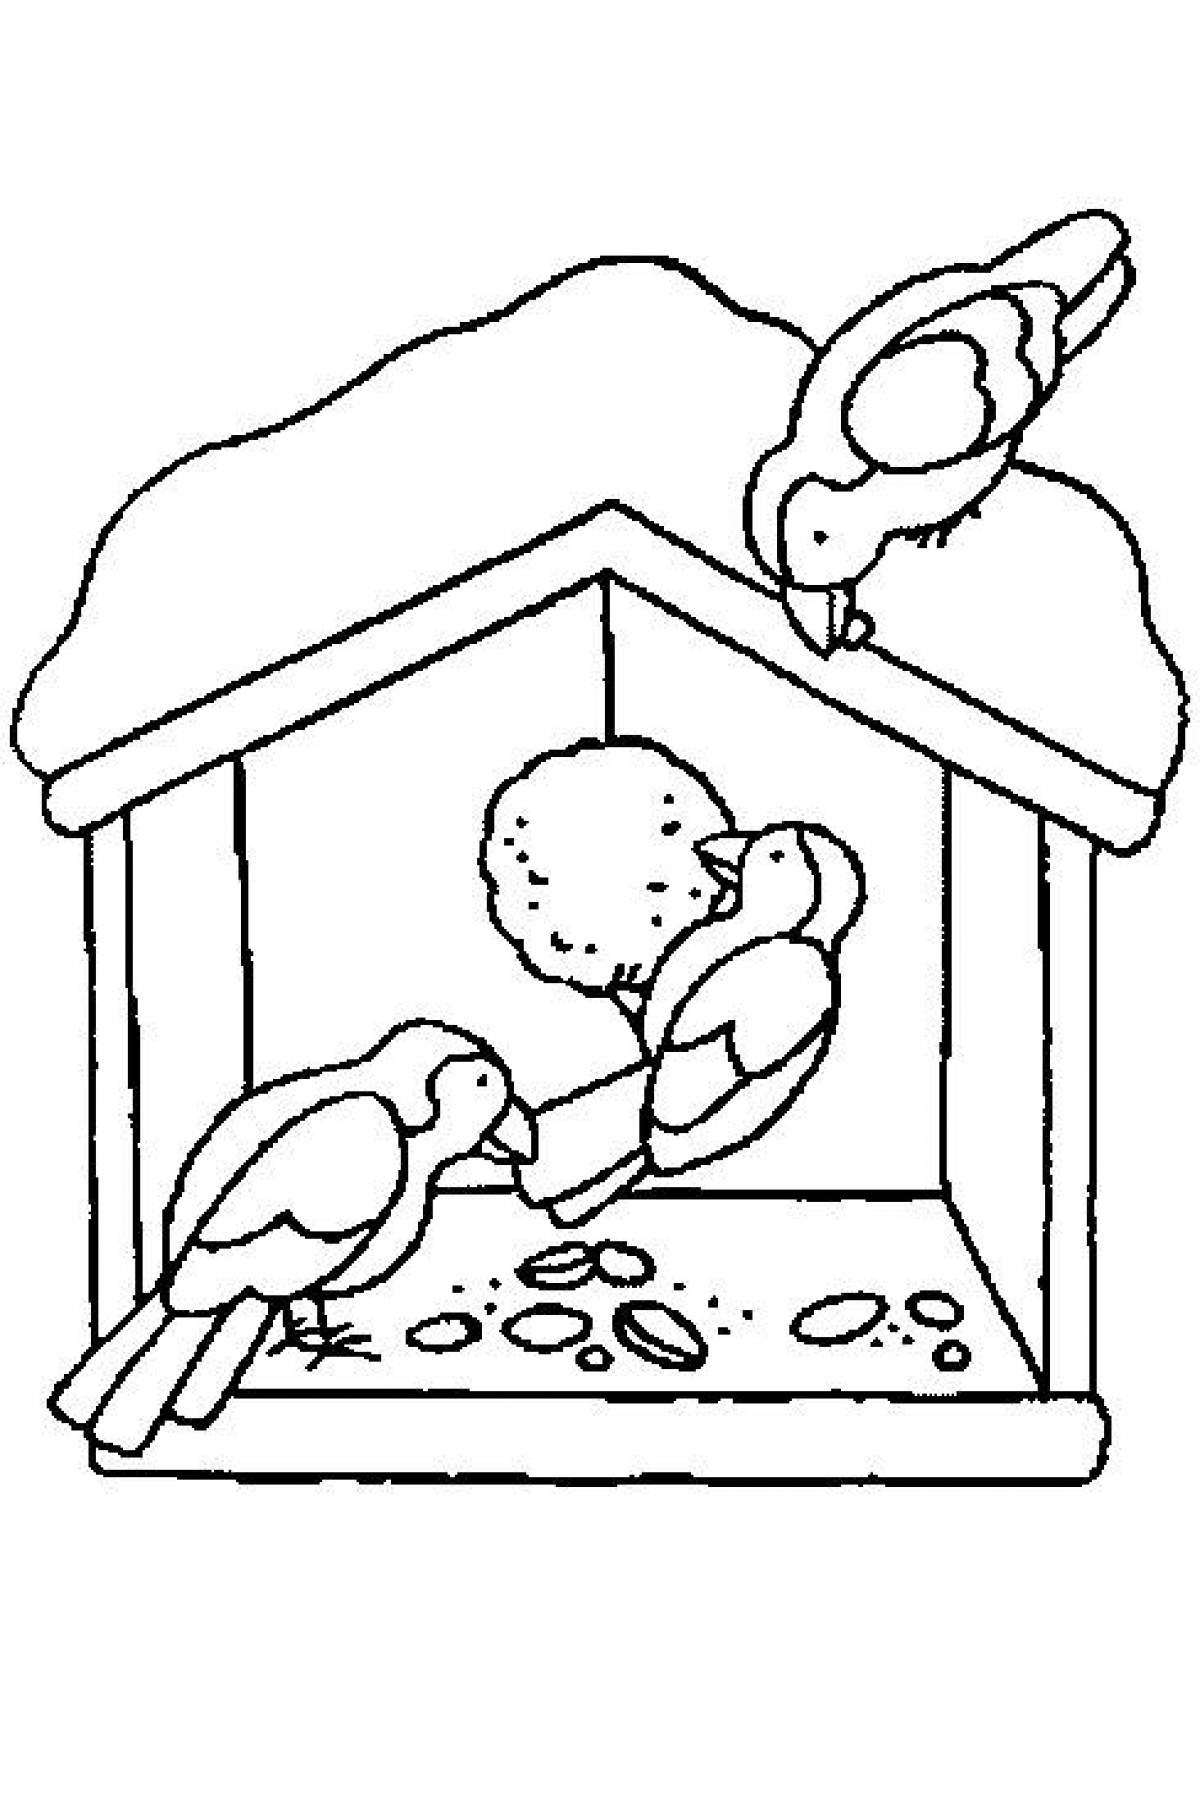 Раскраски Кормушка для птиц (37 шт.) - скачать или распечатать бесплатно #